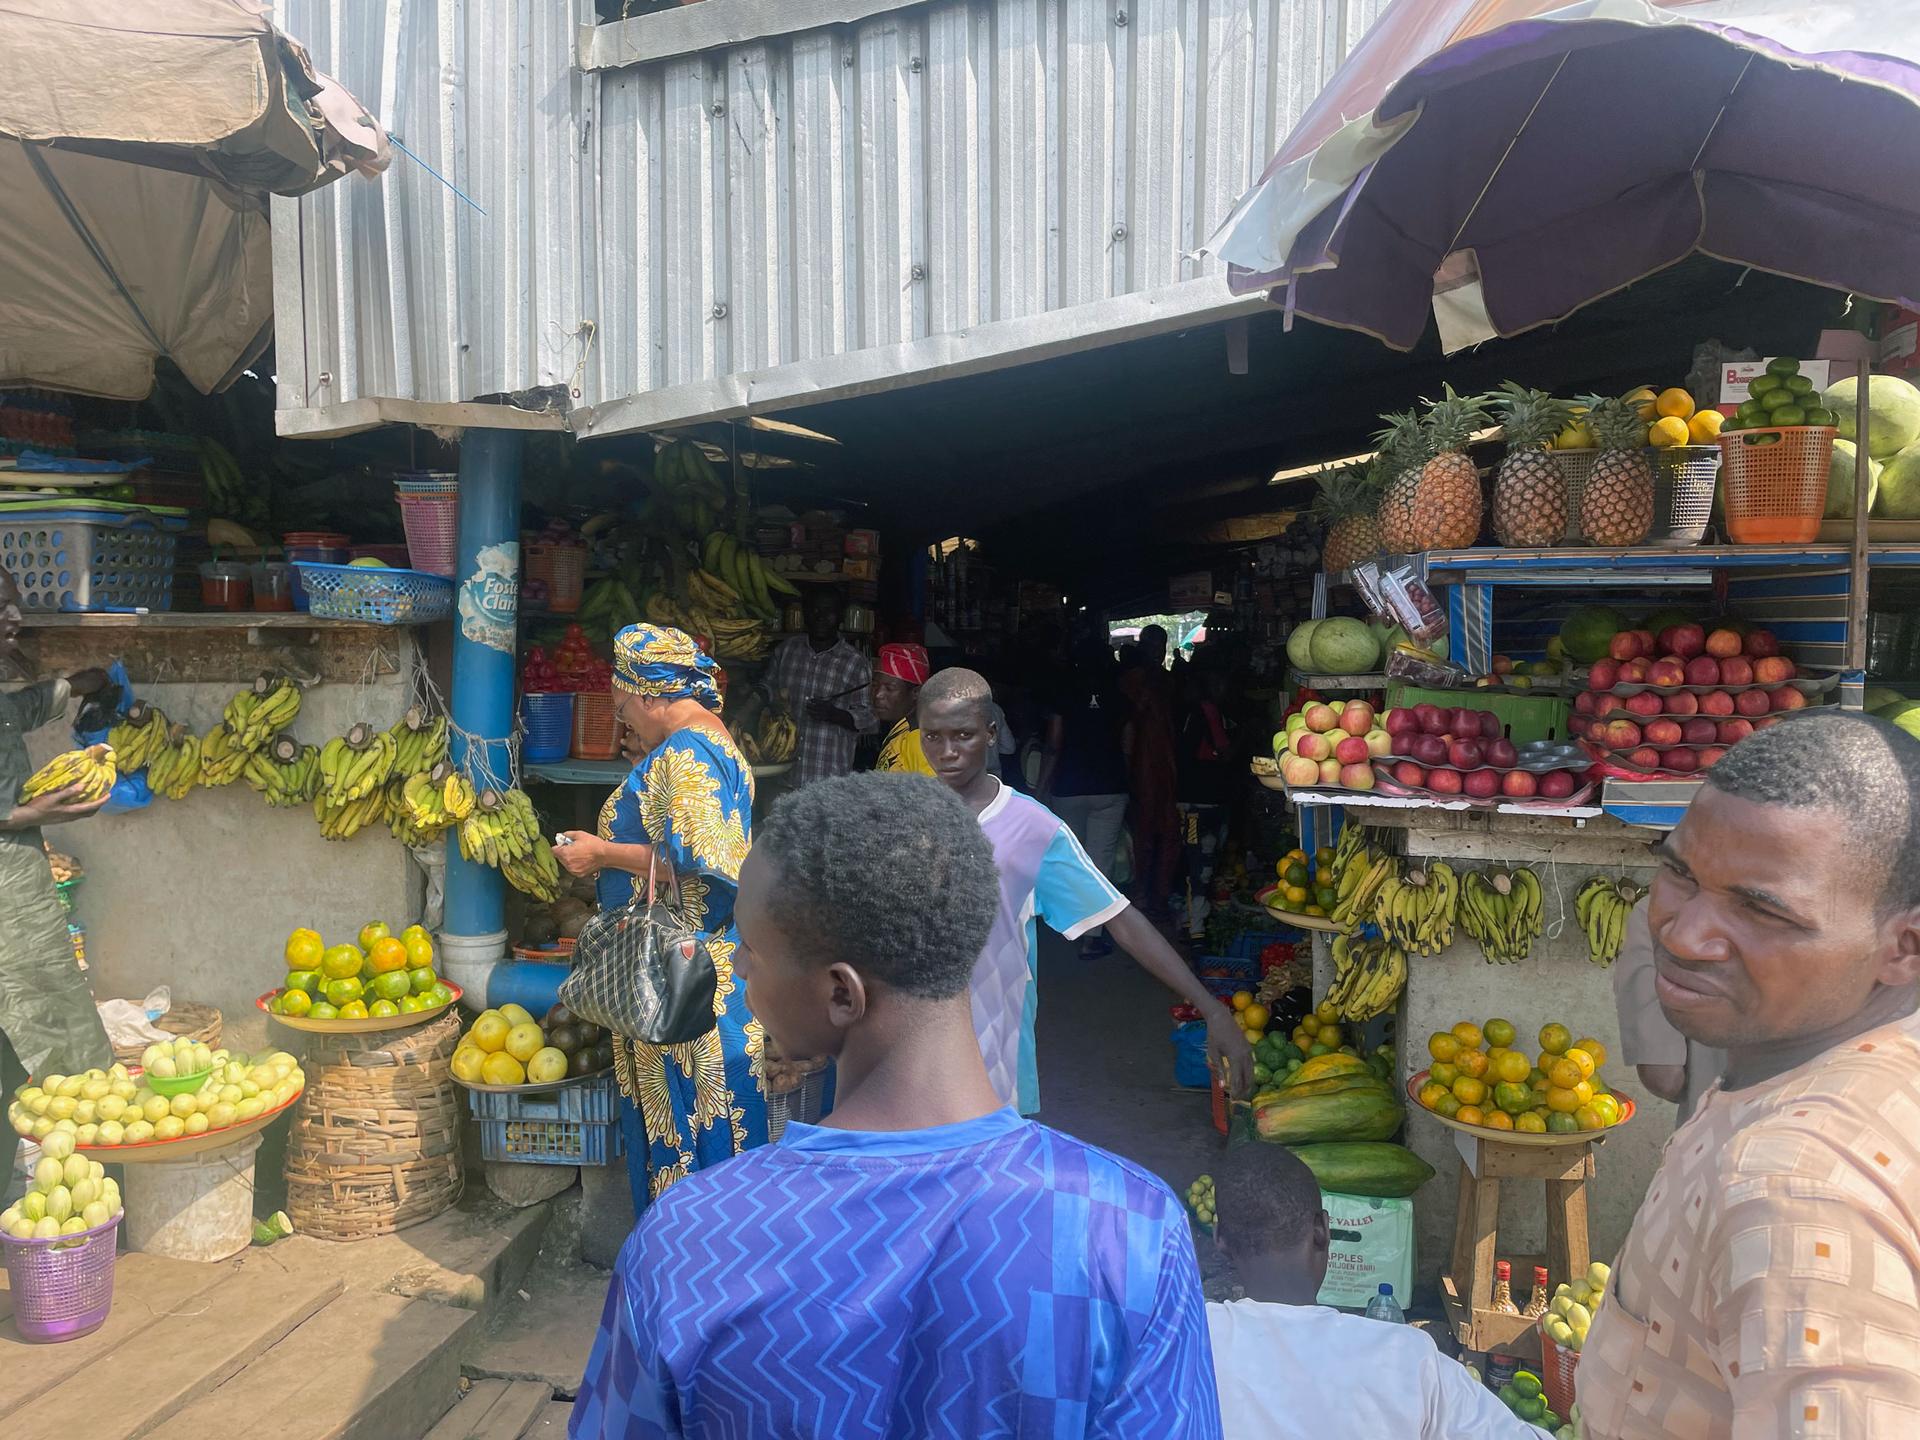 A bustling market in Abuja, Nigeria.